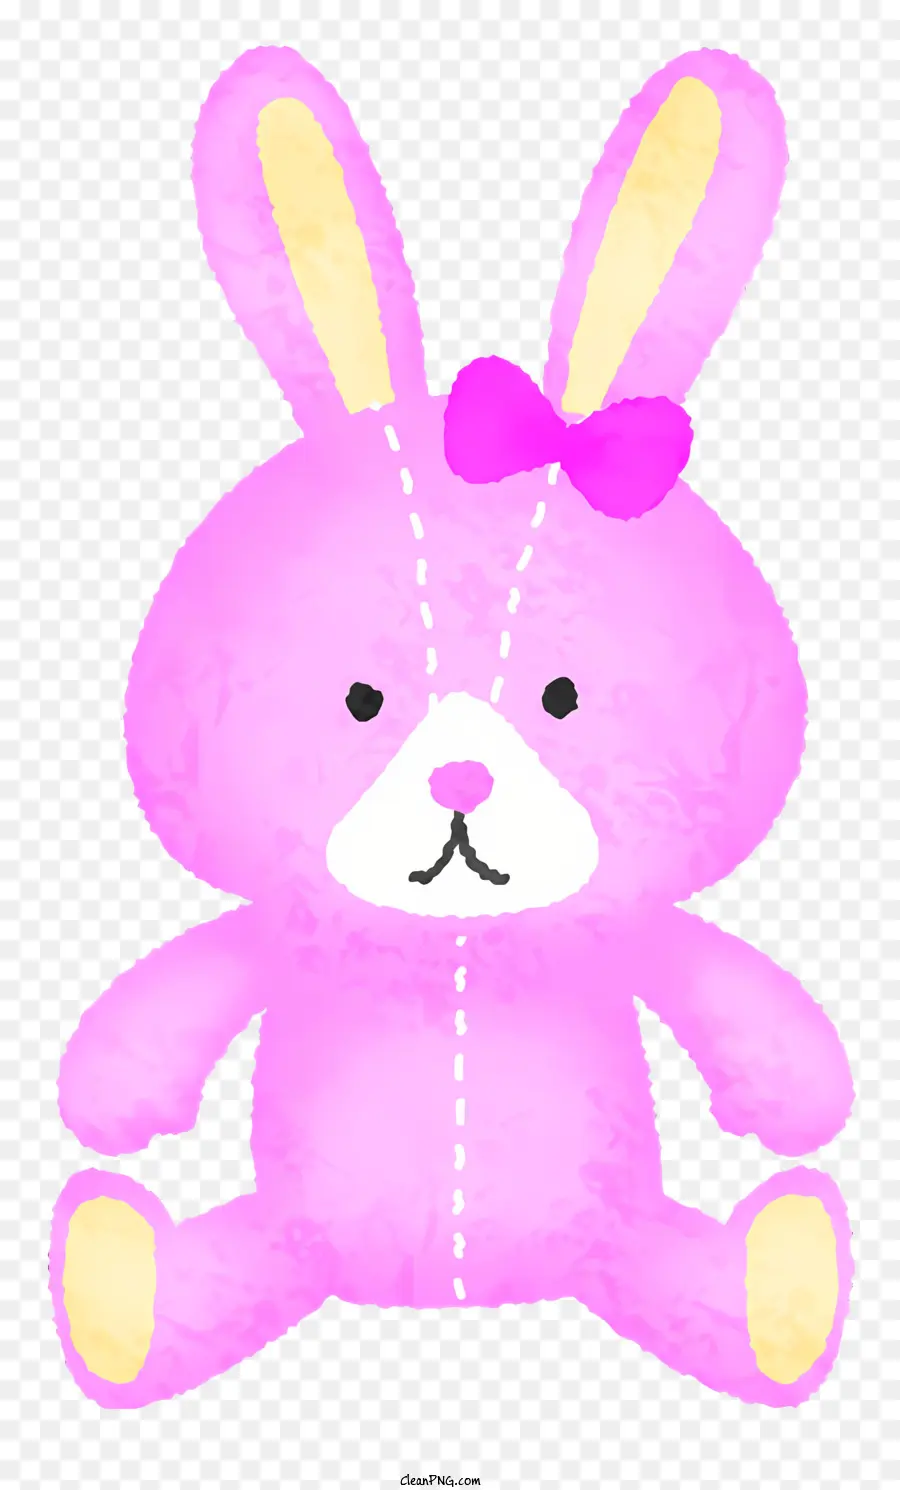 icon rosa peluche giocattolo di coniglio rosa con prua peluche giocattolo coniglio - Coniglio peluche rosa con arco su sfondo nero